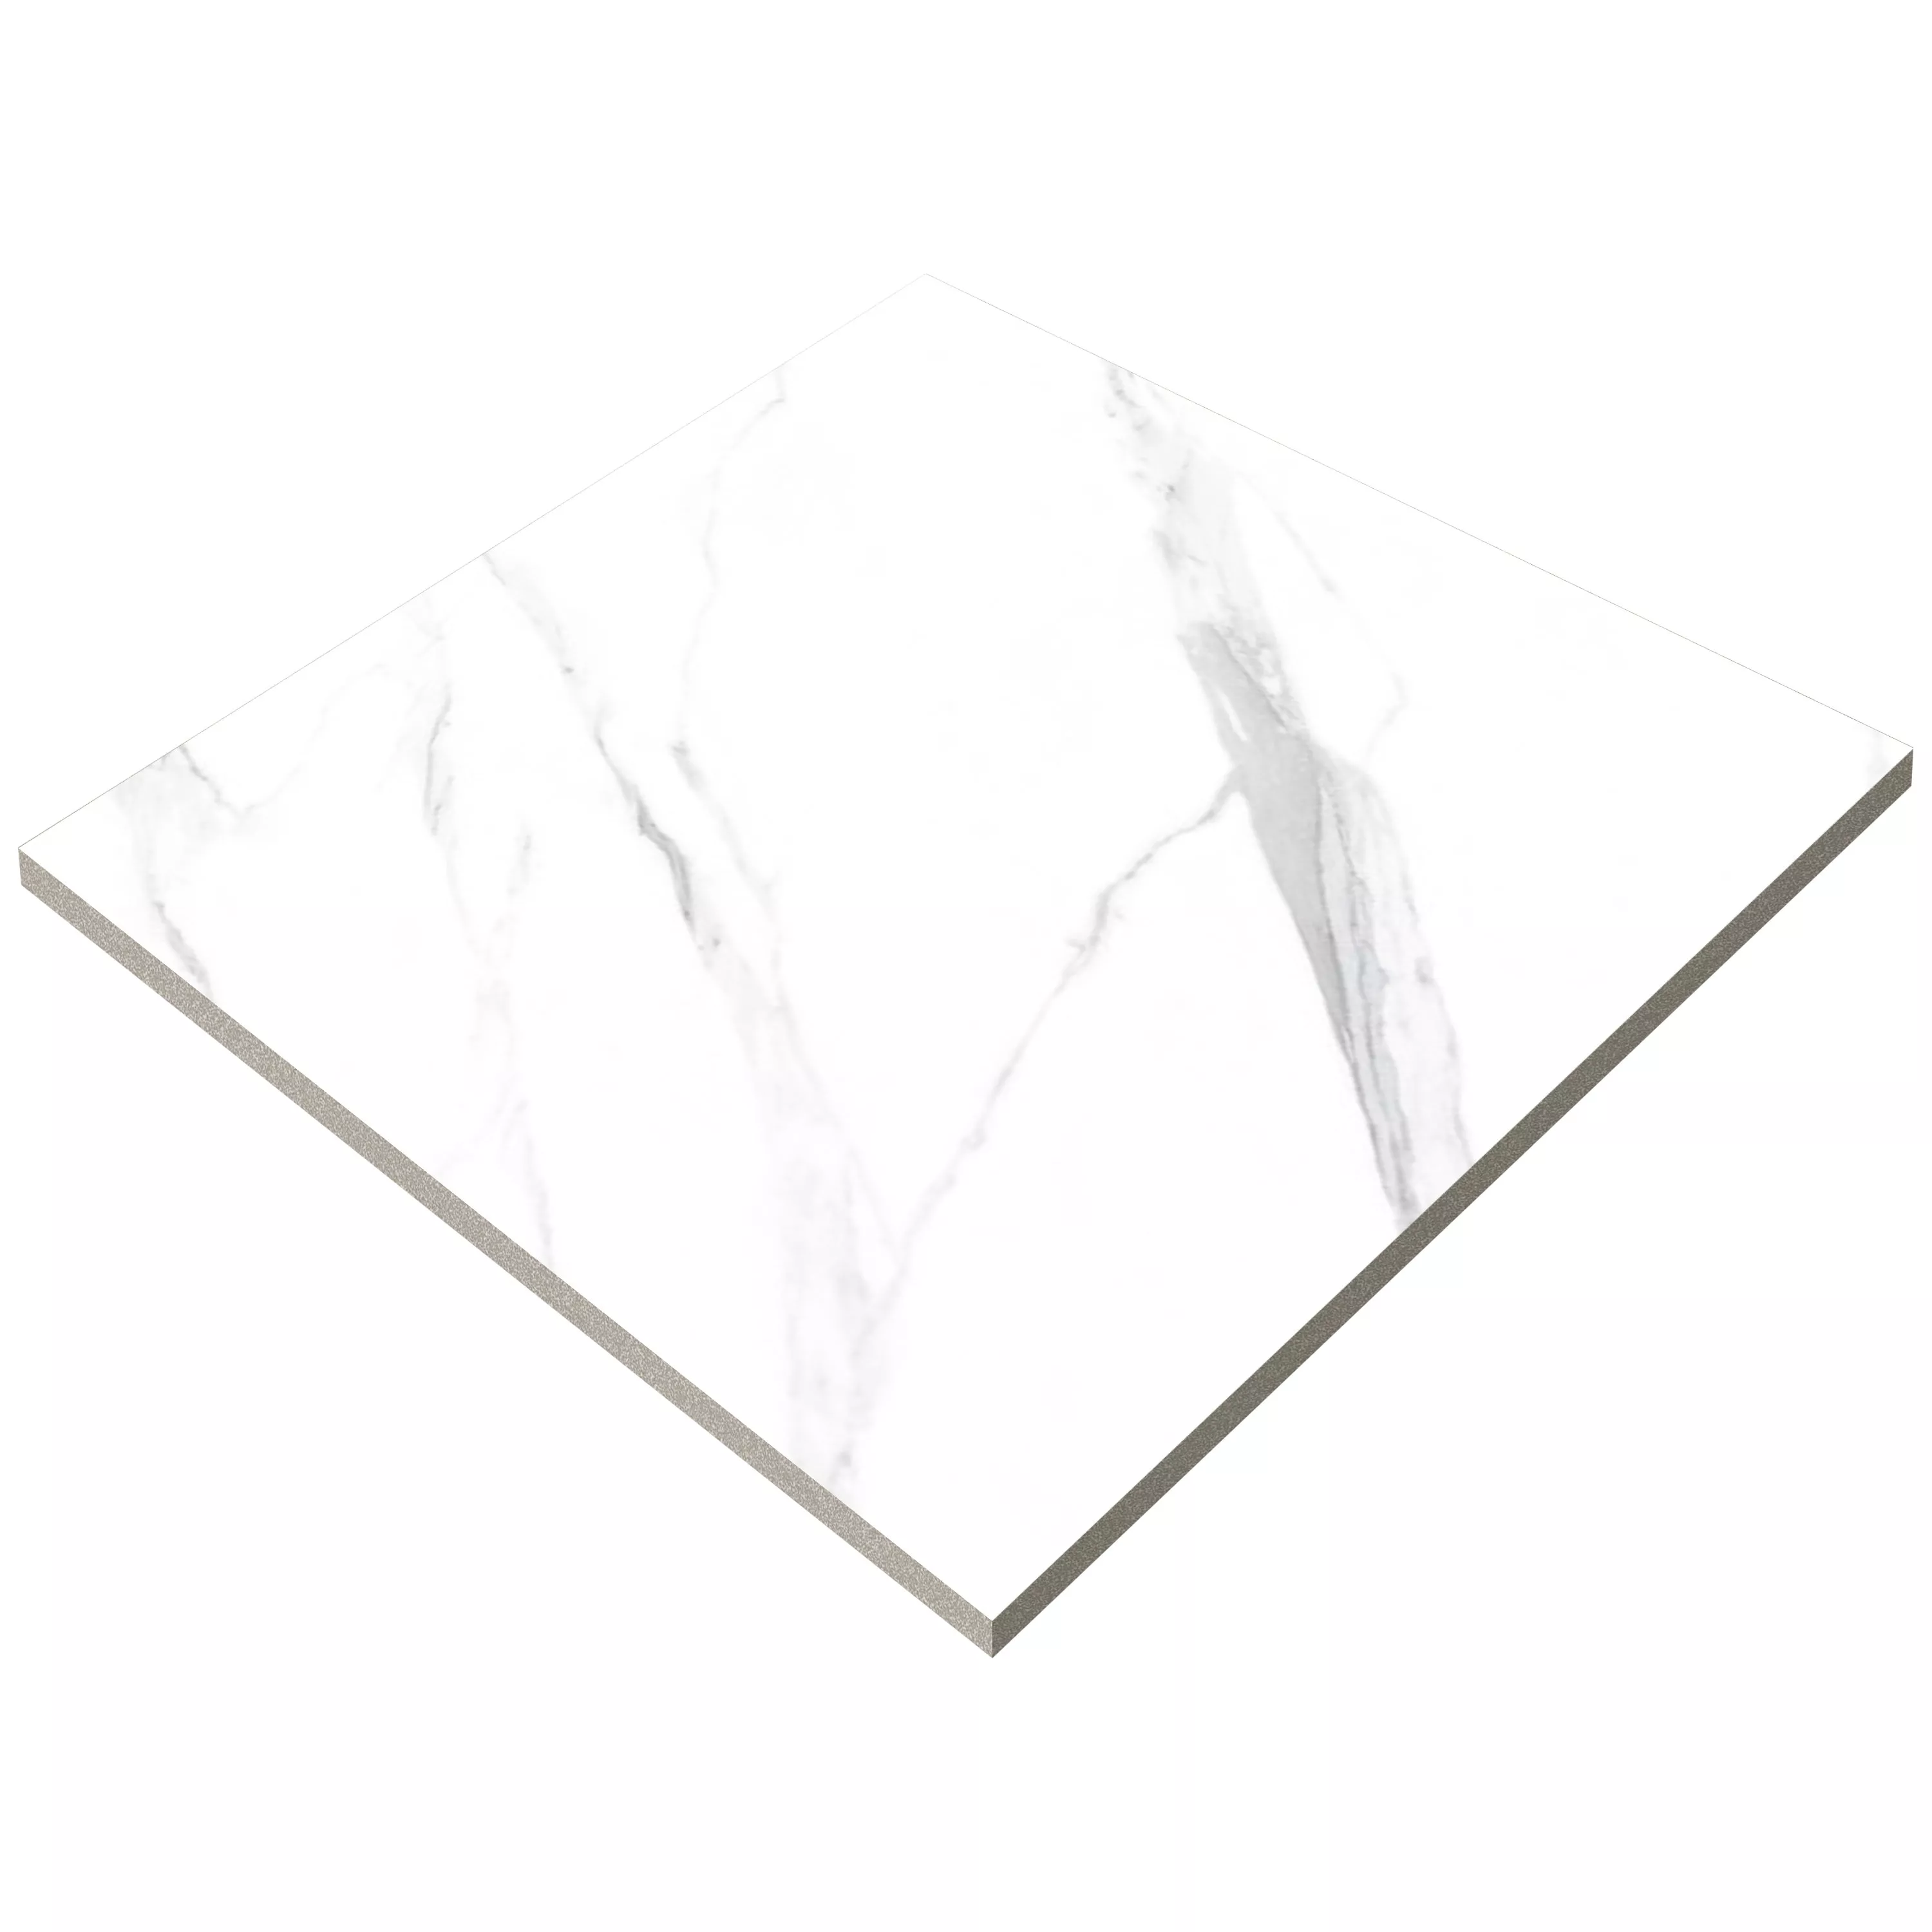 Ladrilhos Louisburg Statuario Branco Fosco Retificado 60x60cm